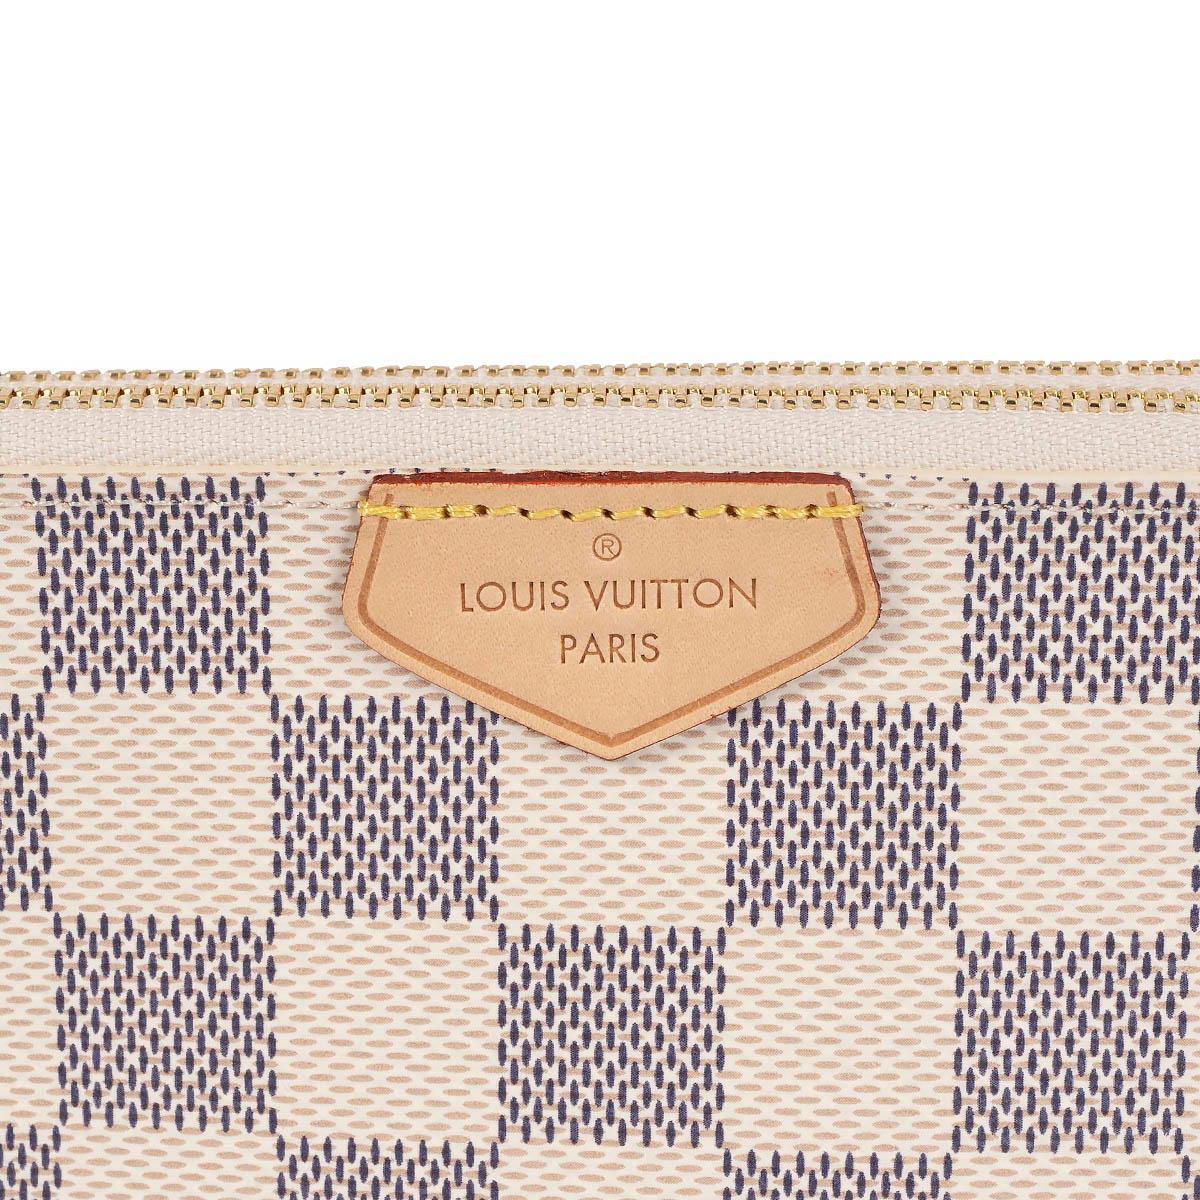 LOUIS VUITTON white Damier Azur canvas DOUBLE ZIP POCHETTE Bag 3